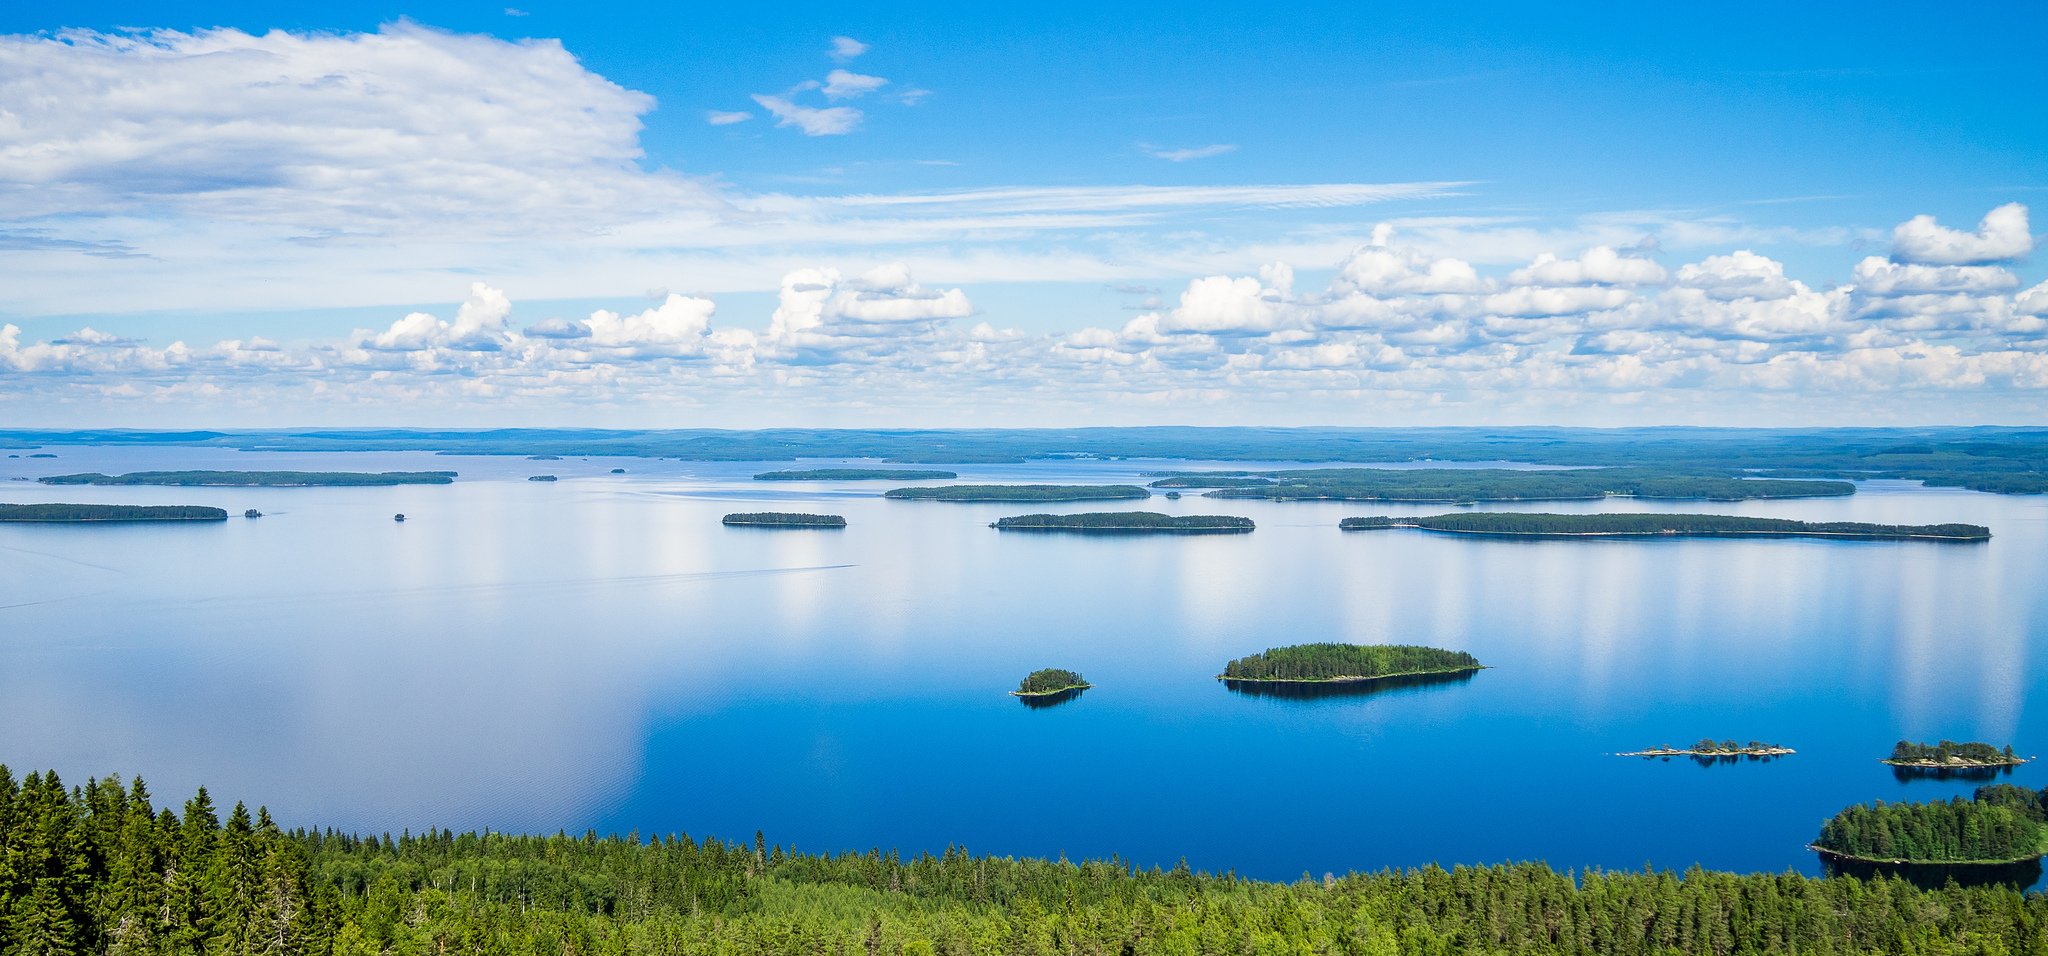 Какую страну называют страной тысячи озер. Озеро Пиелинен Финляндия. Озеро Сайма Финляндия. Озеро Суоми Финляндия. Озеро Штерн Финляндия.